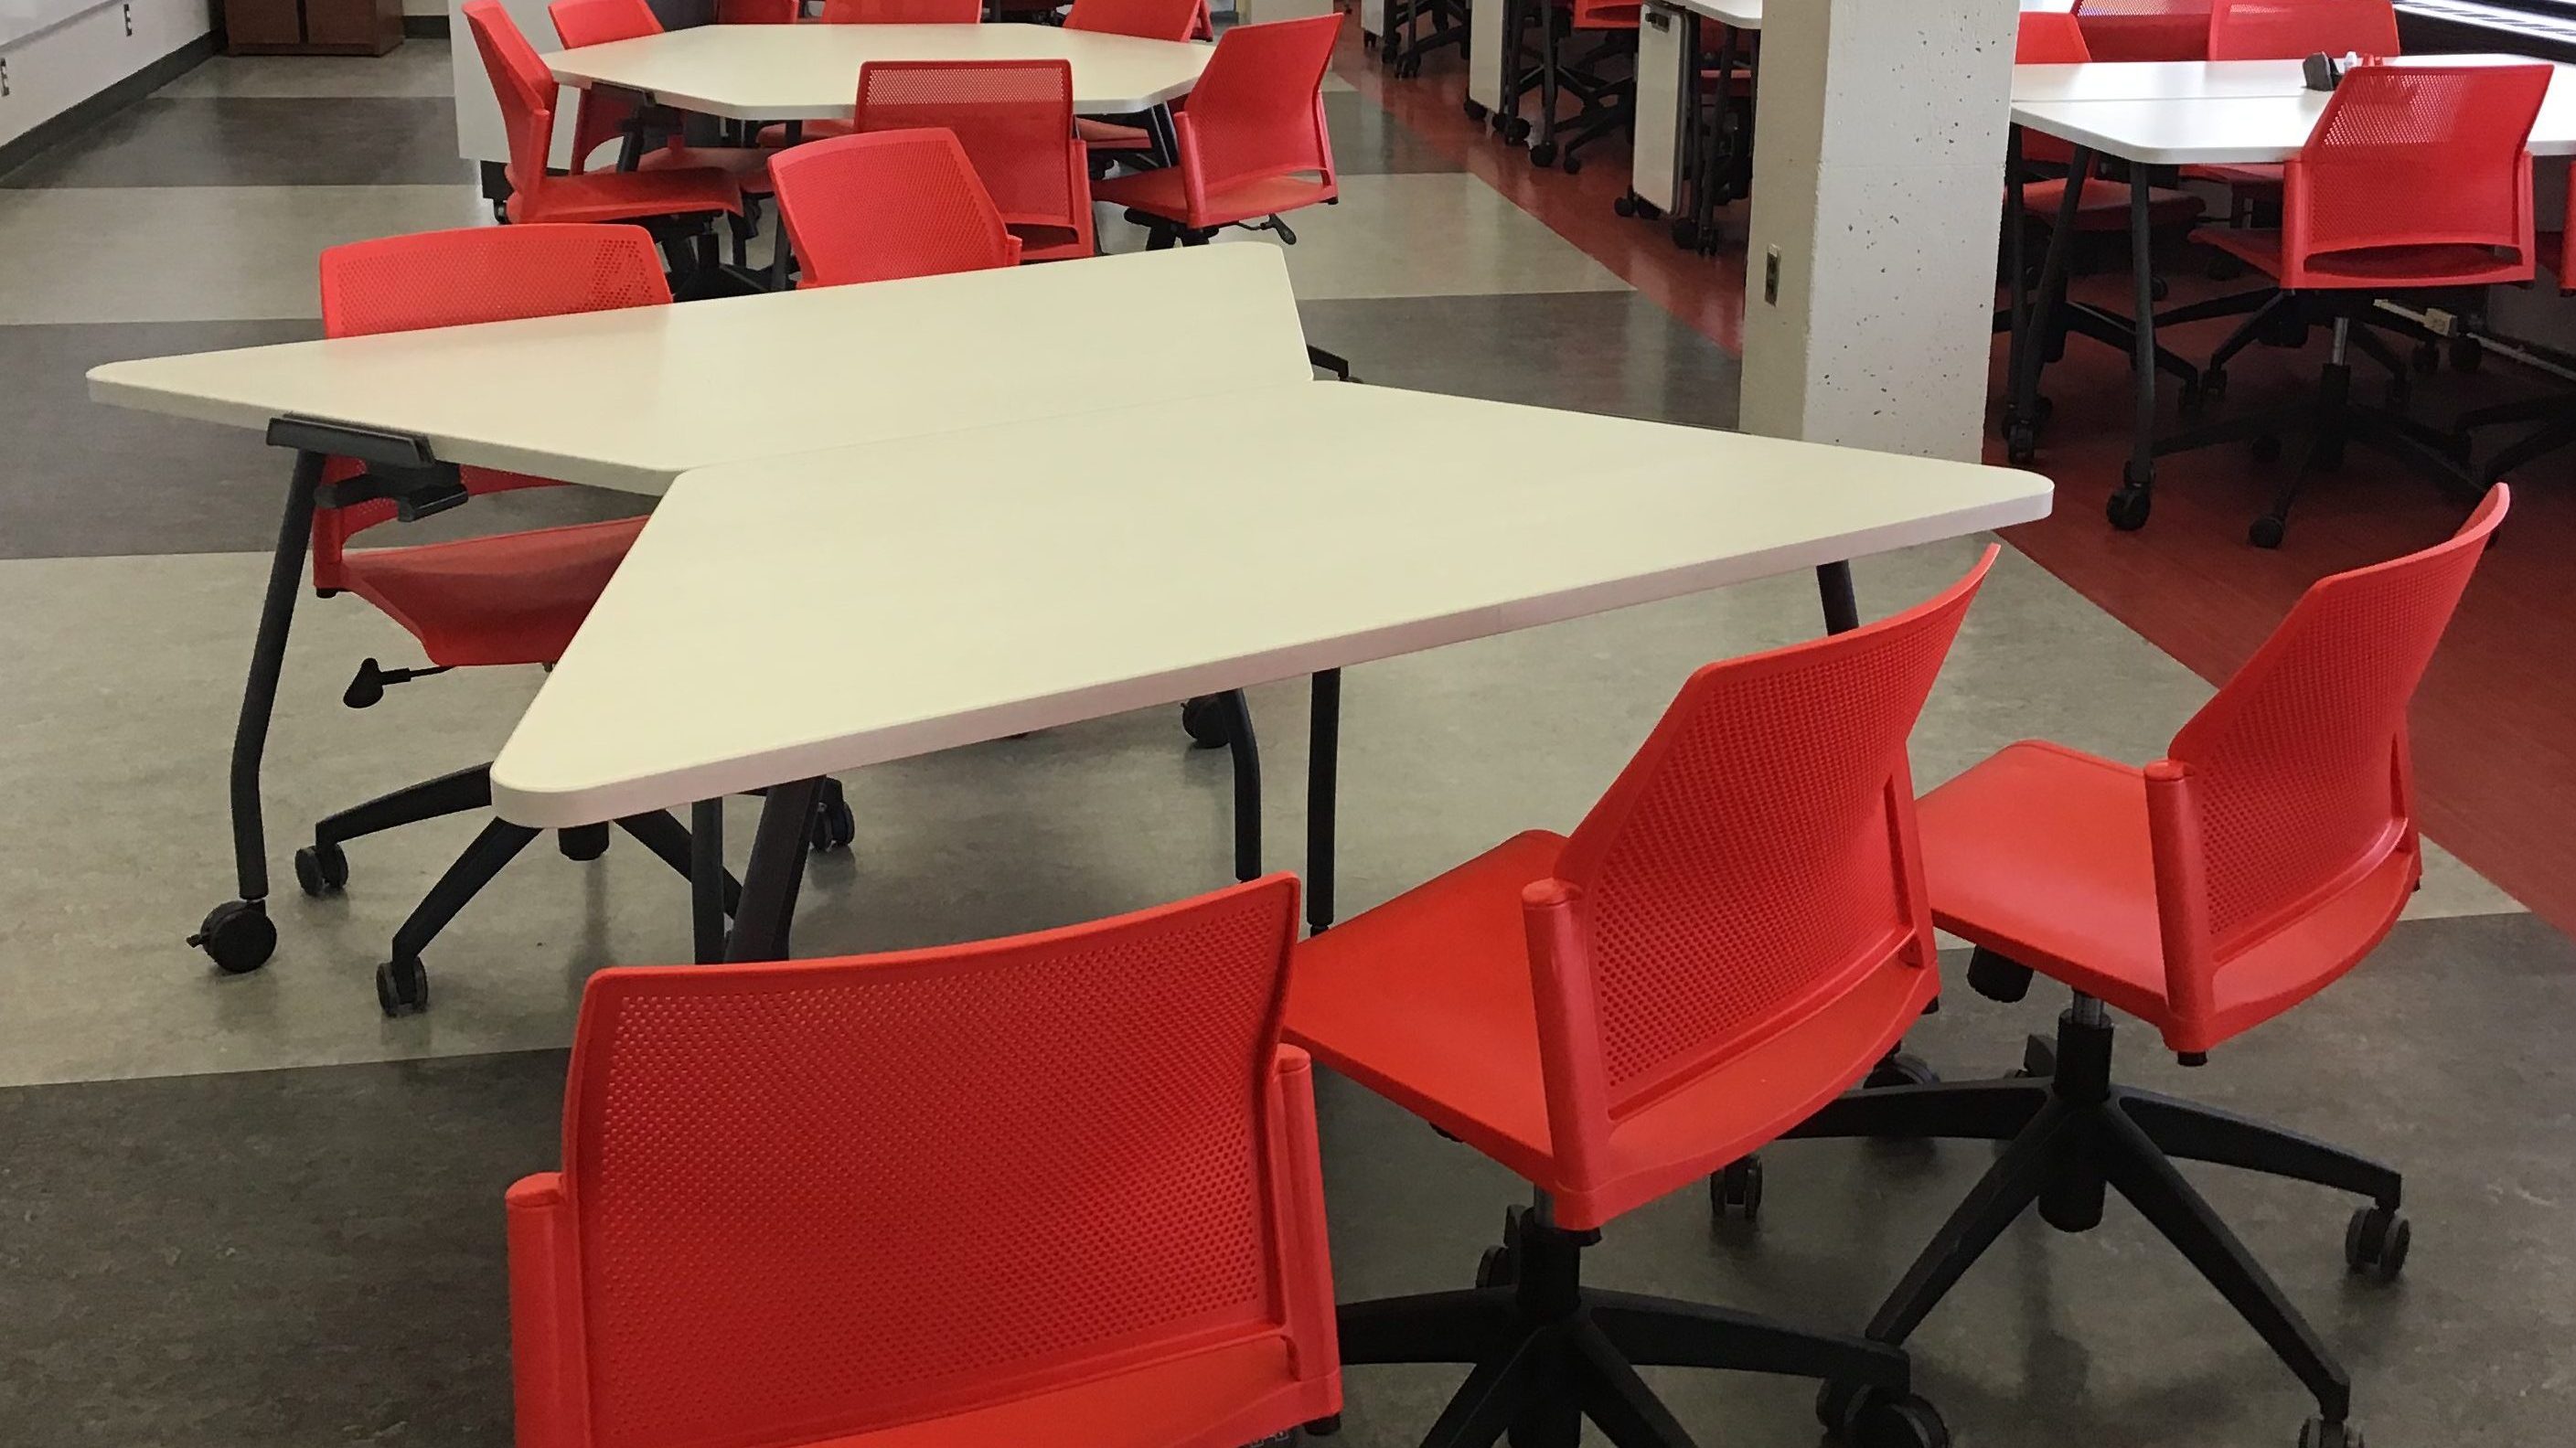 Les tables sont placés de manière à ce que deux équipes d'étudiants présentent leur points de vue sur une problématique.